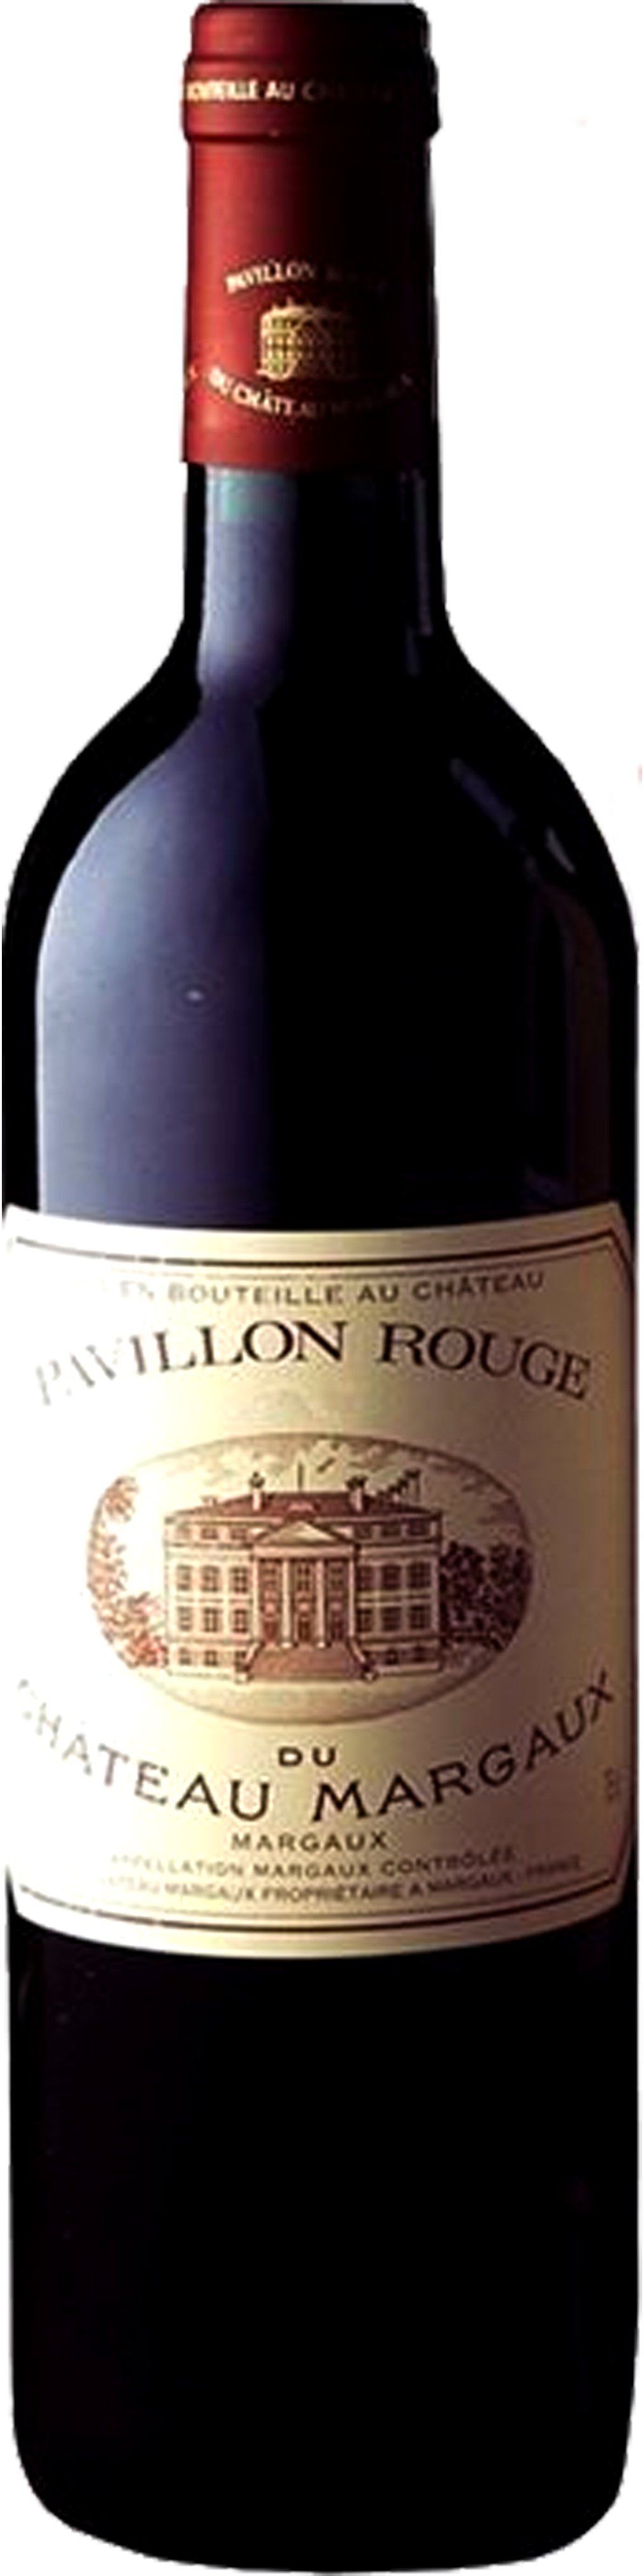 Bottle shot of 1999 Pavillon Rouge du Château Margaux